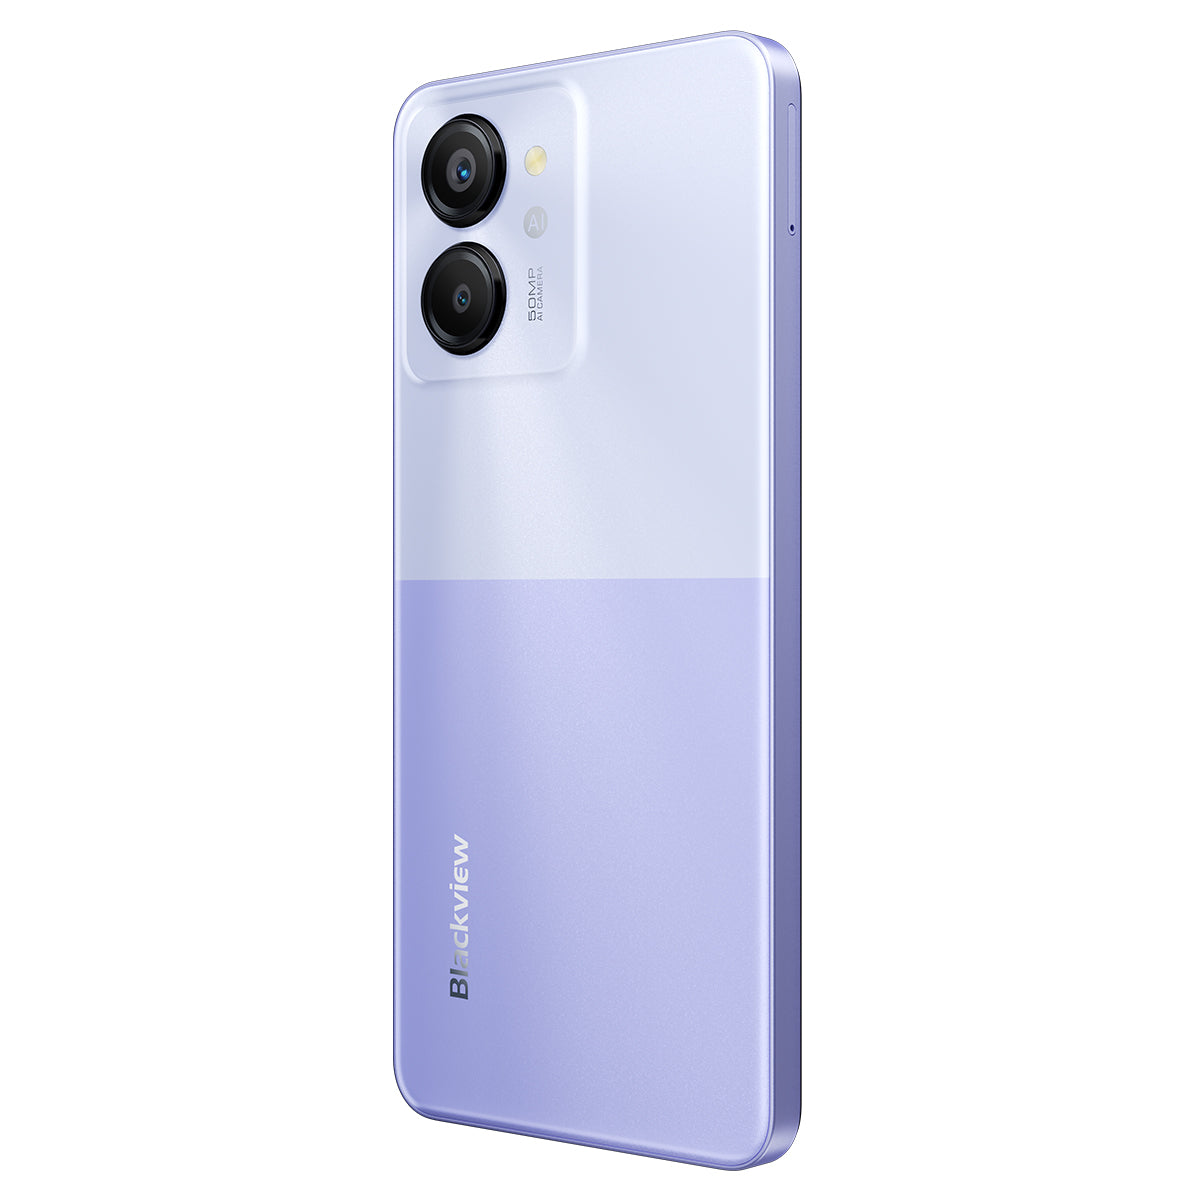 Blackview Color 8 - Smartphone Unisoc T616 Octa-core 6,75 pouces, 8 Go + 128 Go/256 Go, appareil photo 50 MP, 4G